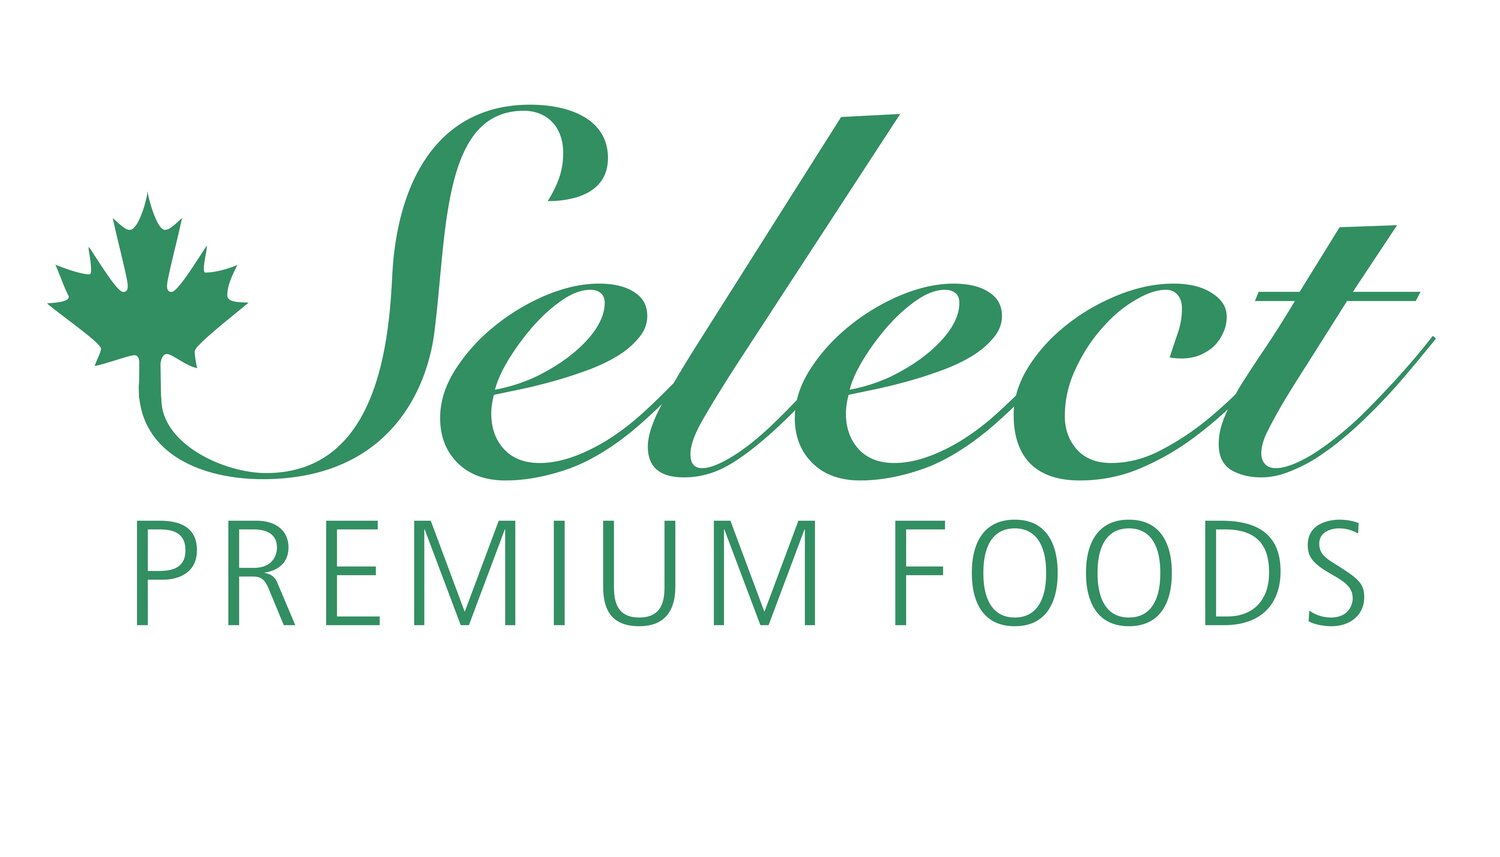 Select Premium Foods